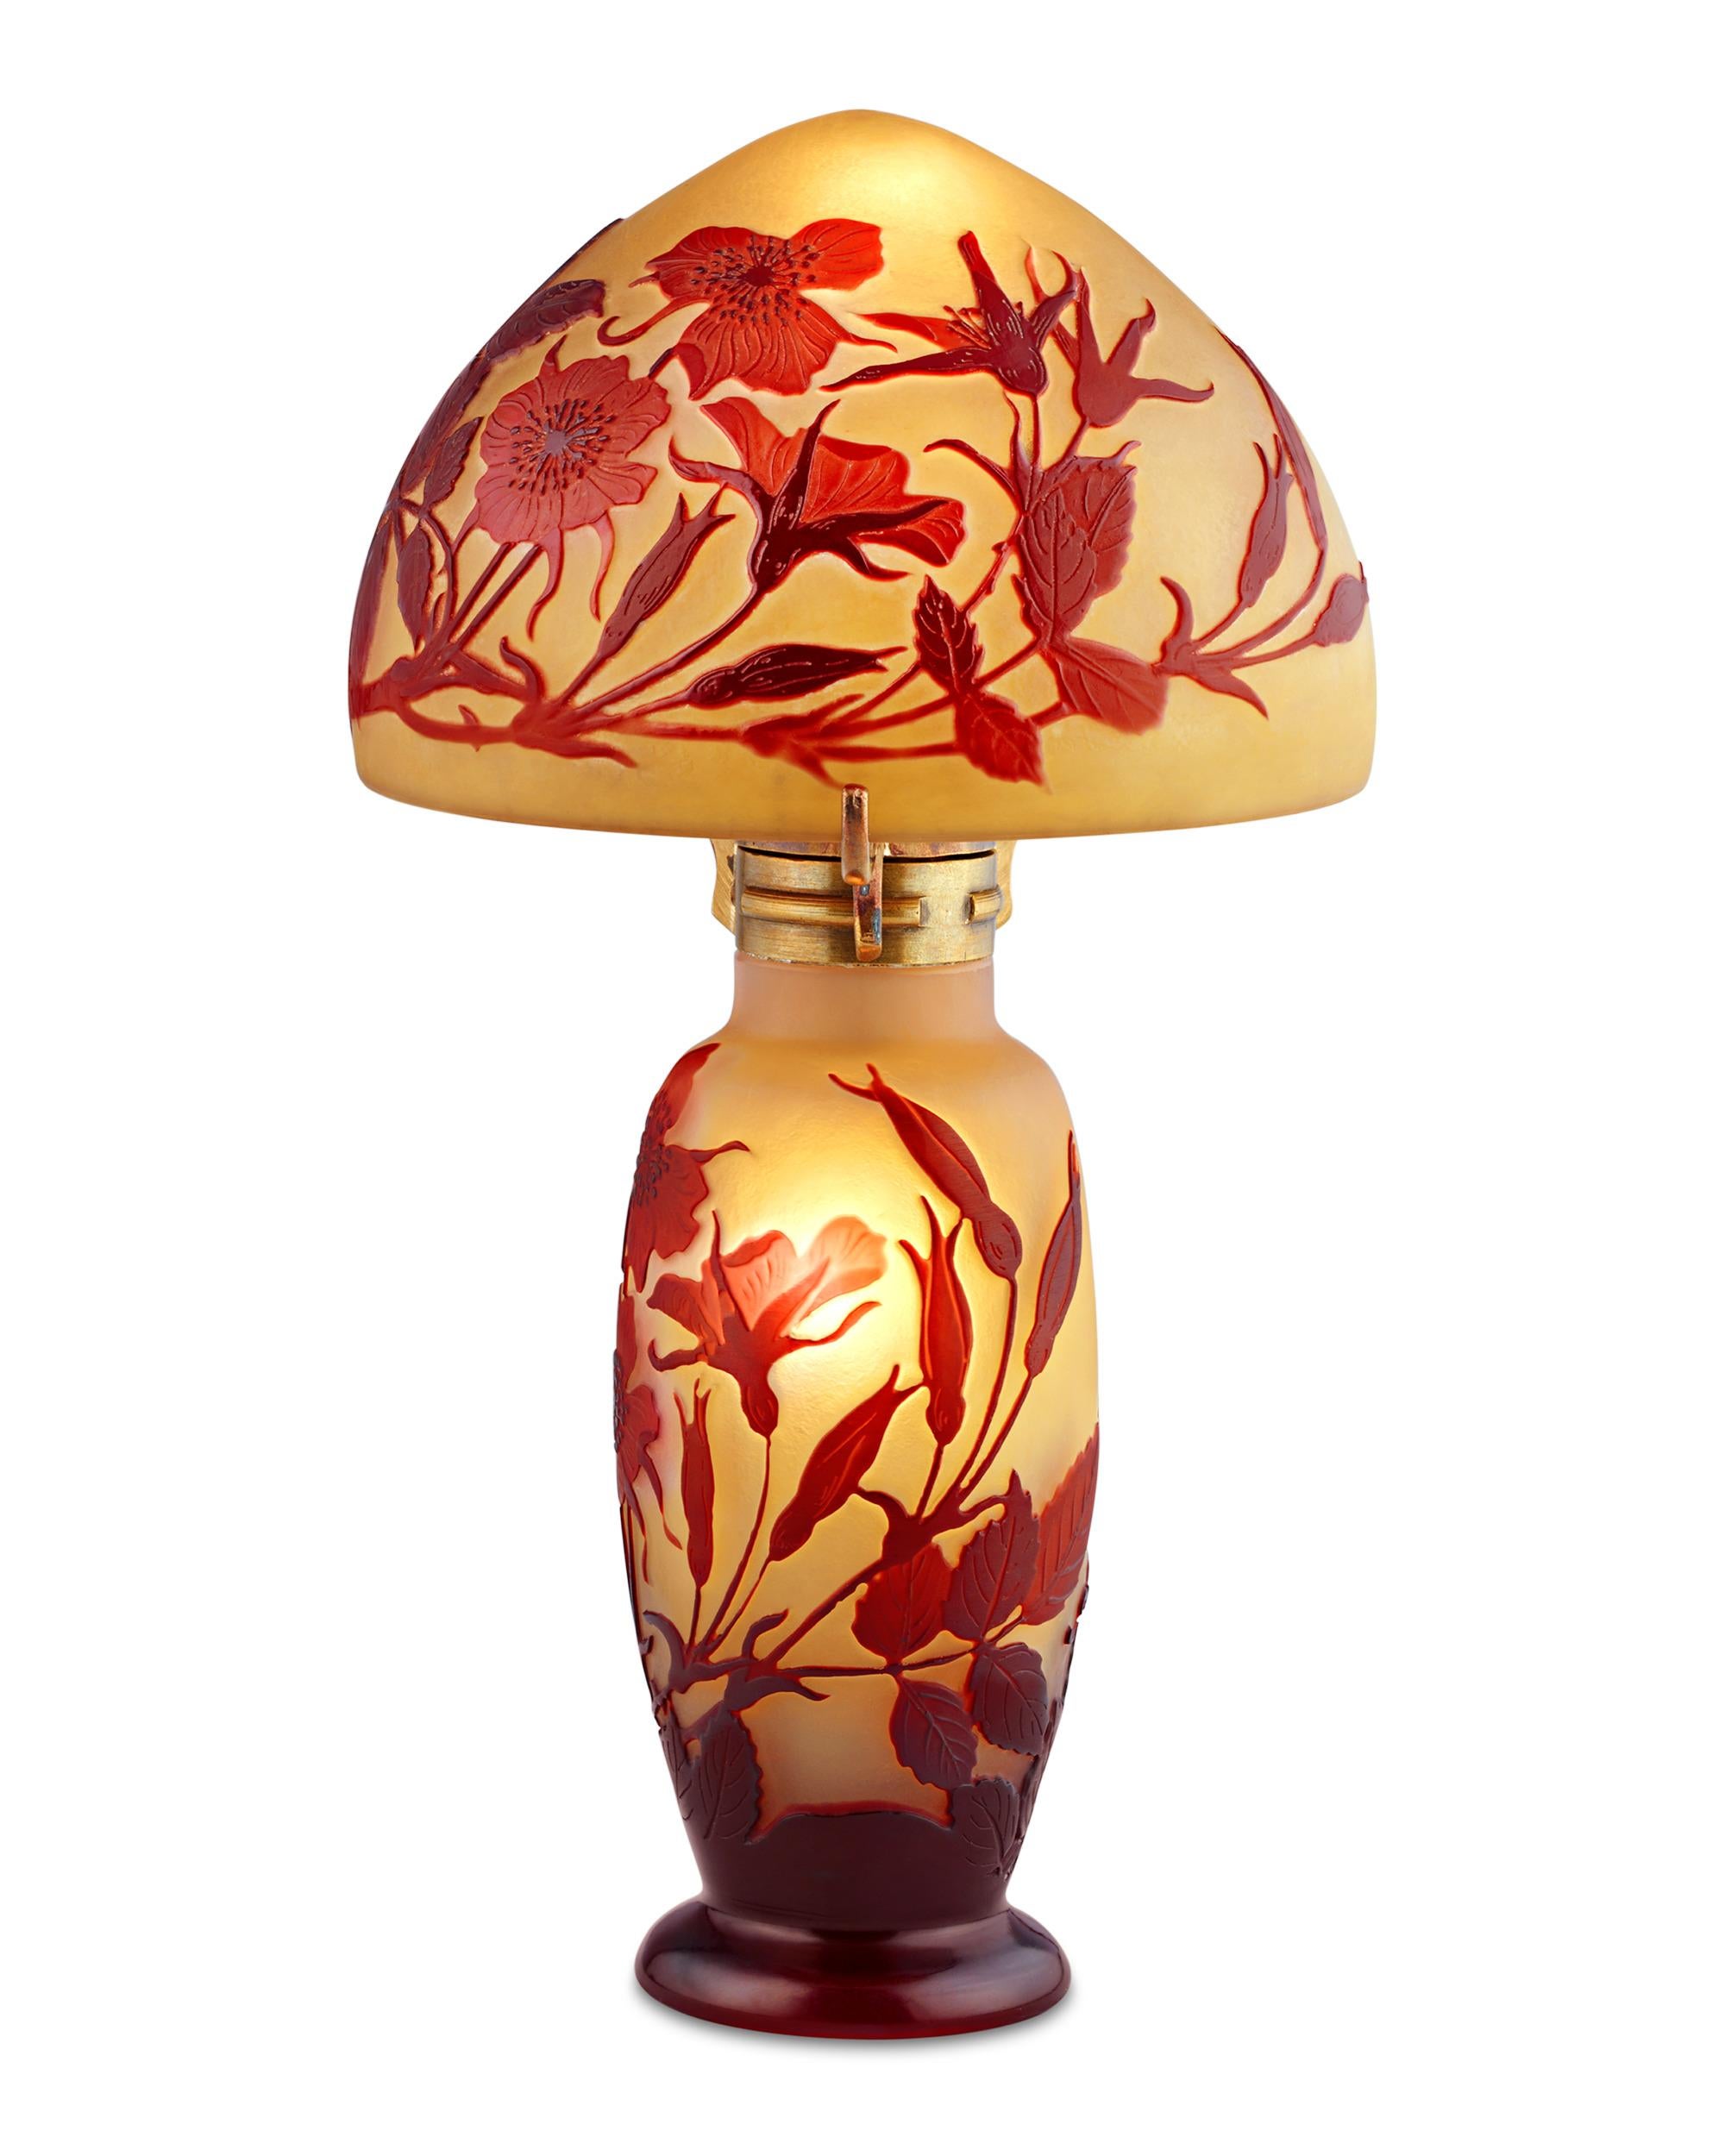 Émile Gallé est l'un des noms les plus réputés de la verrerie française, et ses lampes camées comptent parmi ses créations les plus convoitées. Délicatement gravé d'un motif de fleurs et de feuilles, cet exemplaire témoigne de la précision